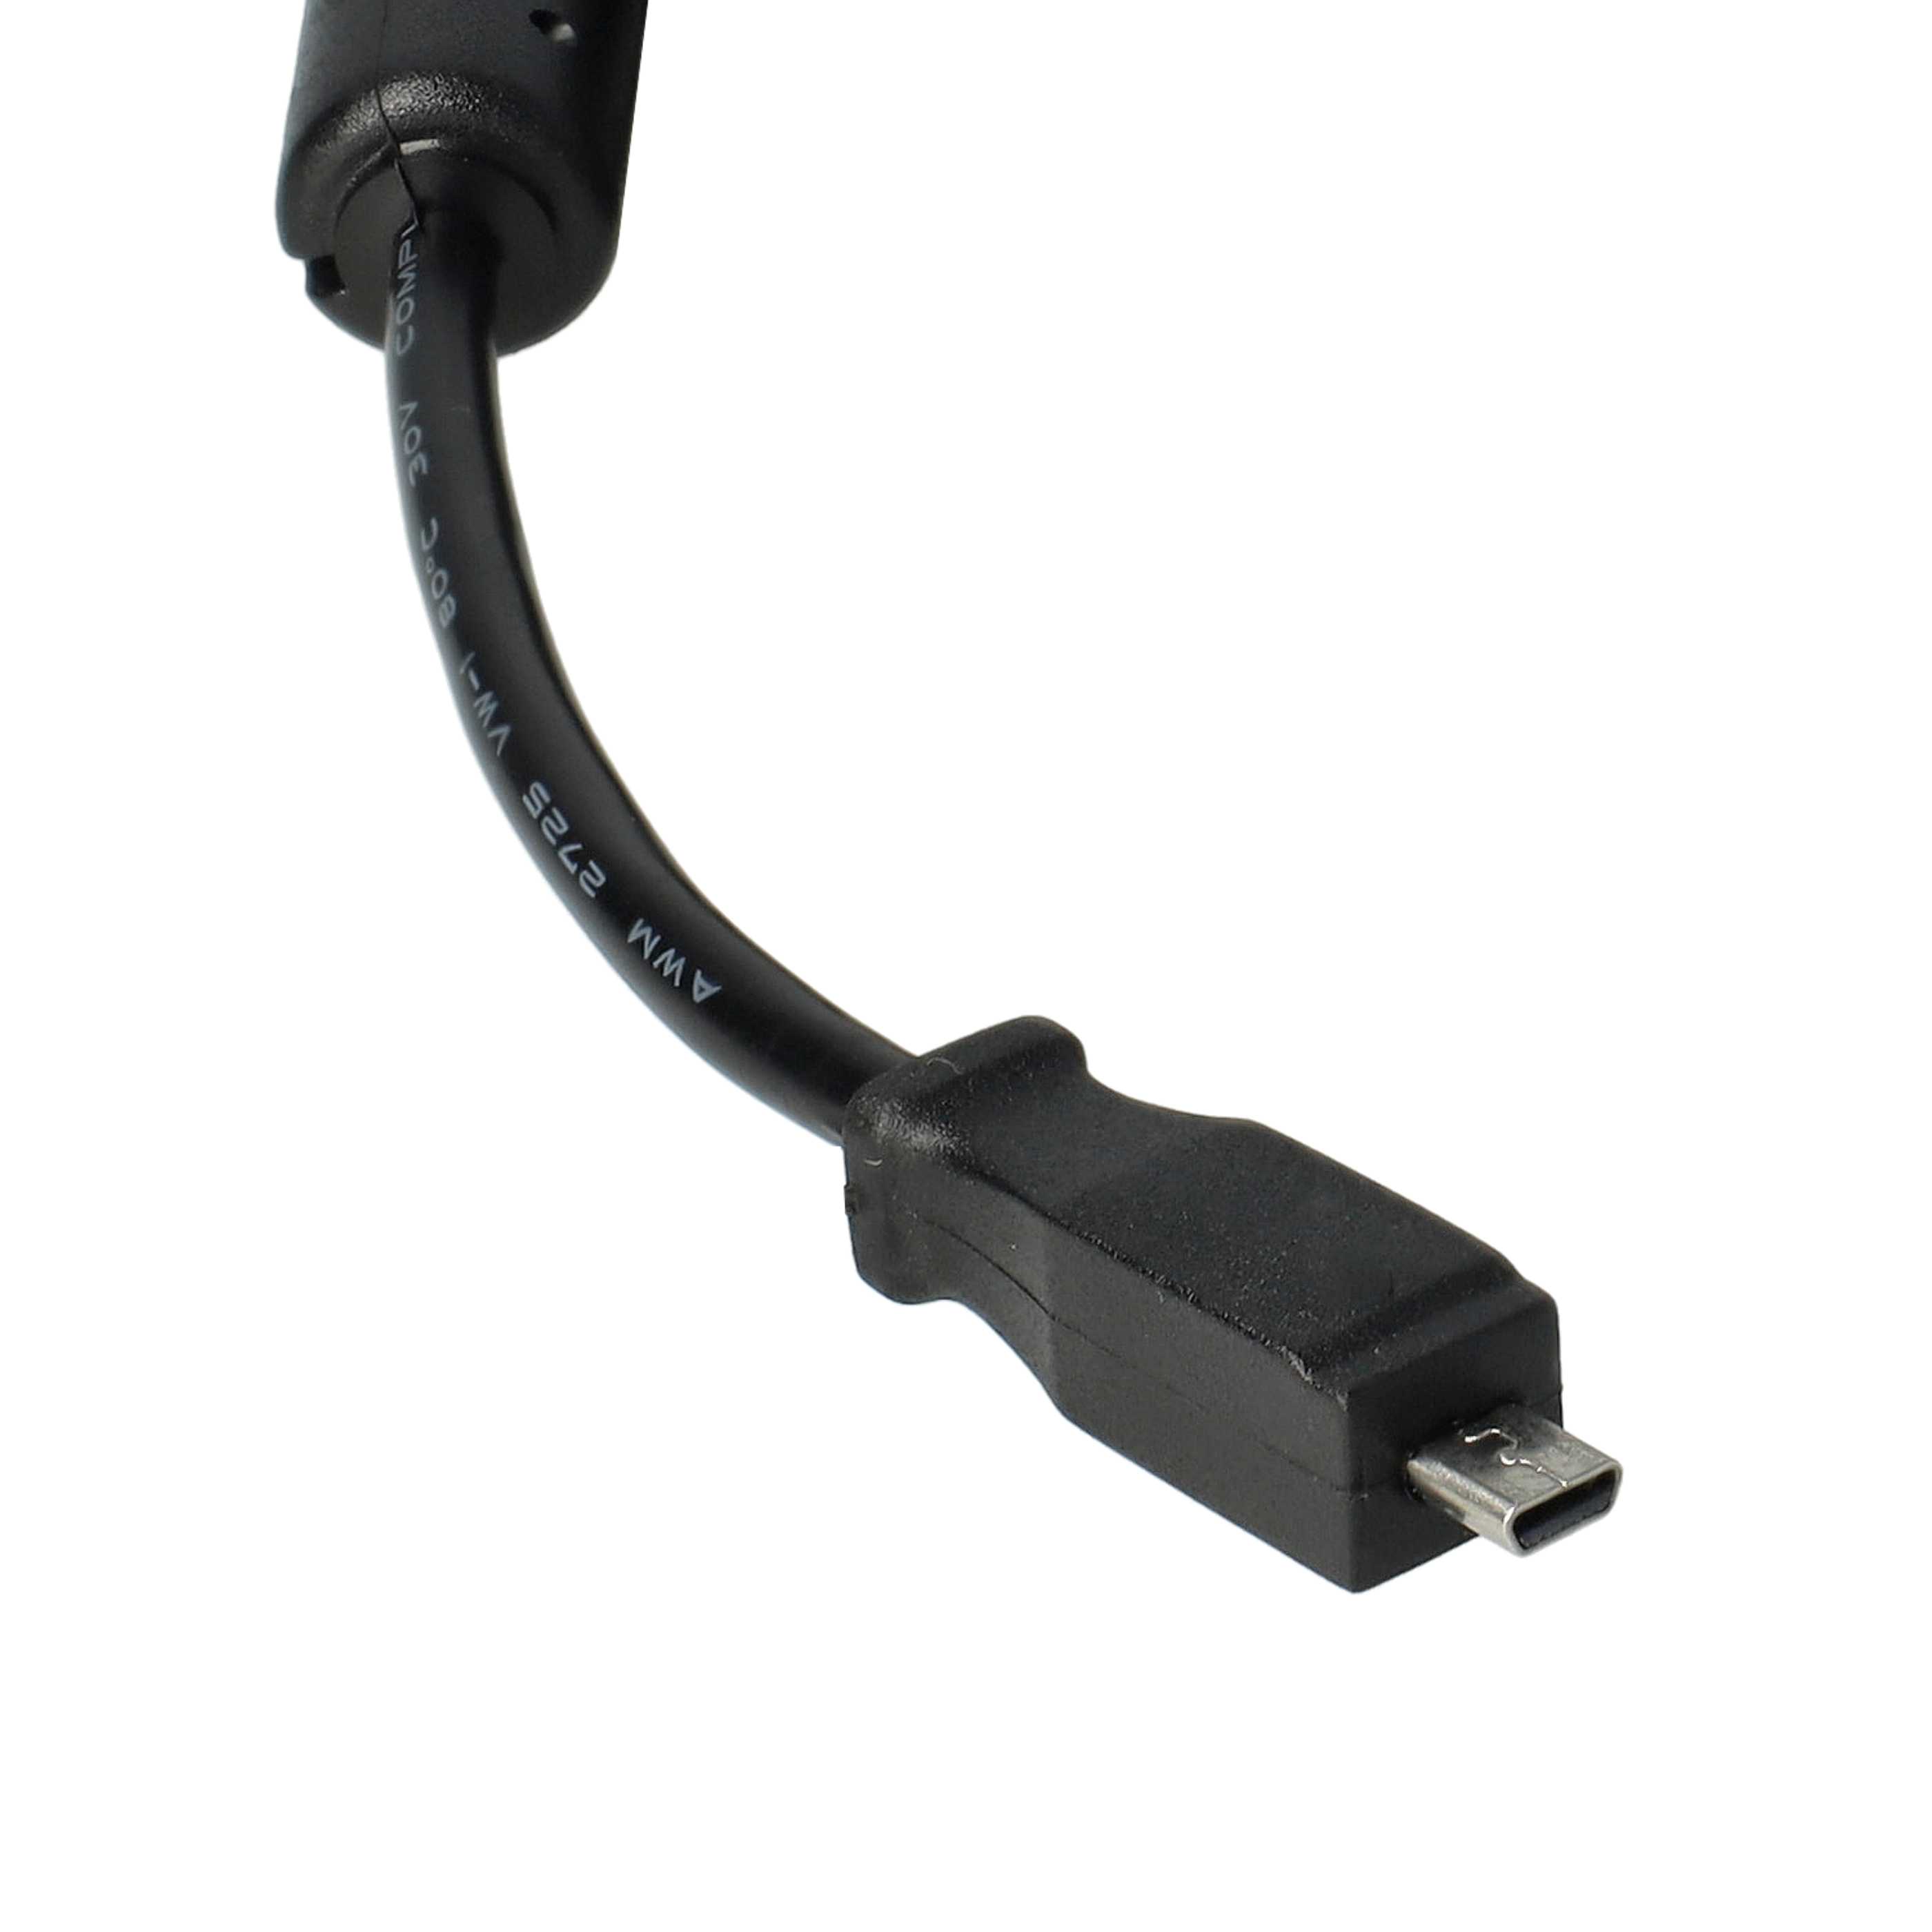 USB Datenkabel als Ersatz für Kodak U-8 für Kamera - 150 cm